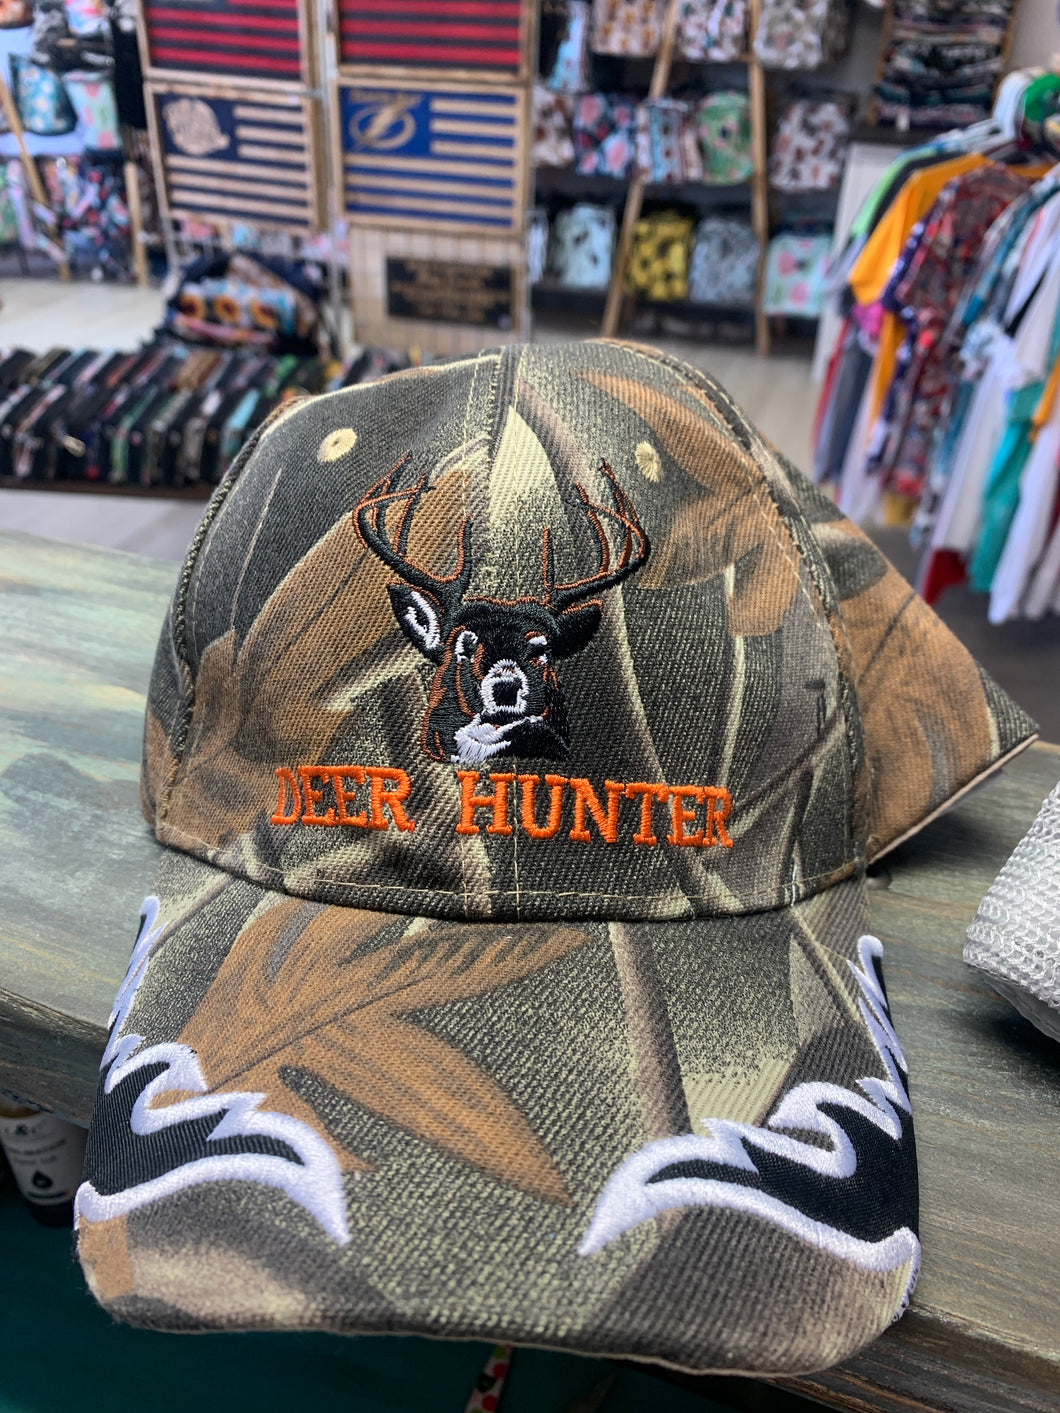 Deer hunter baseball hat